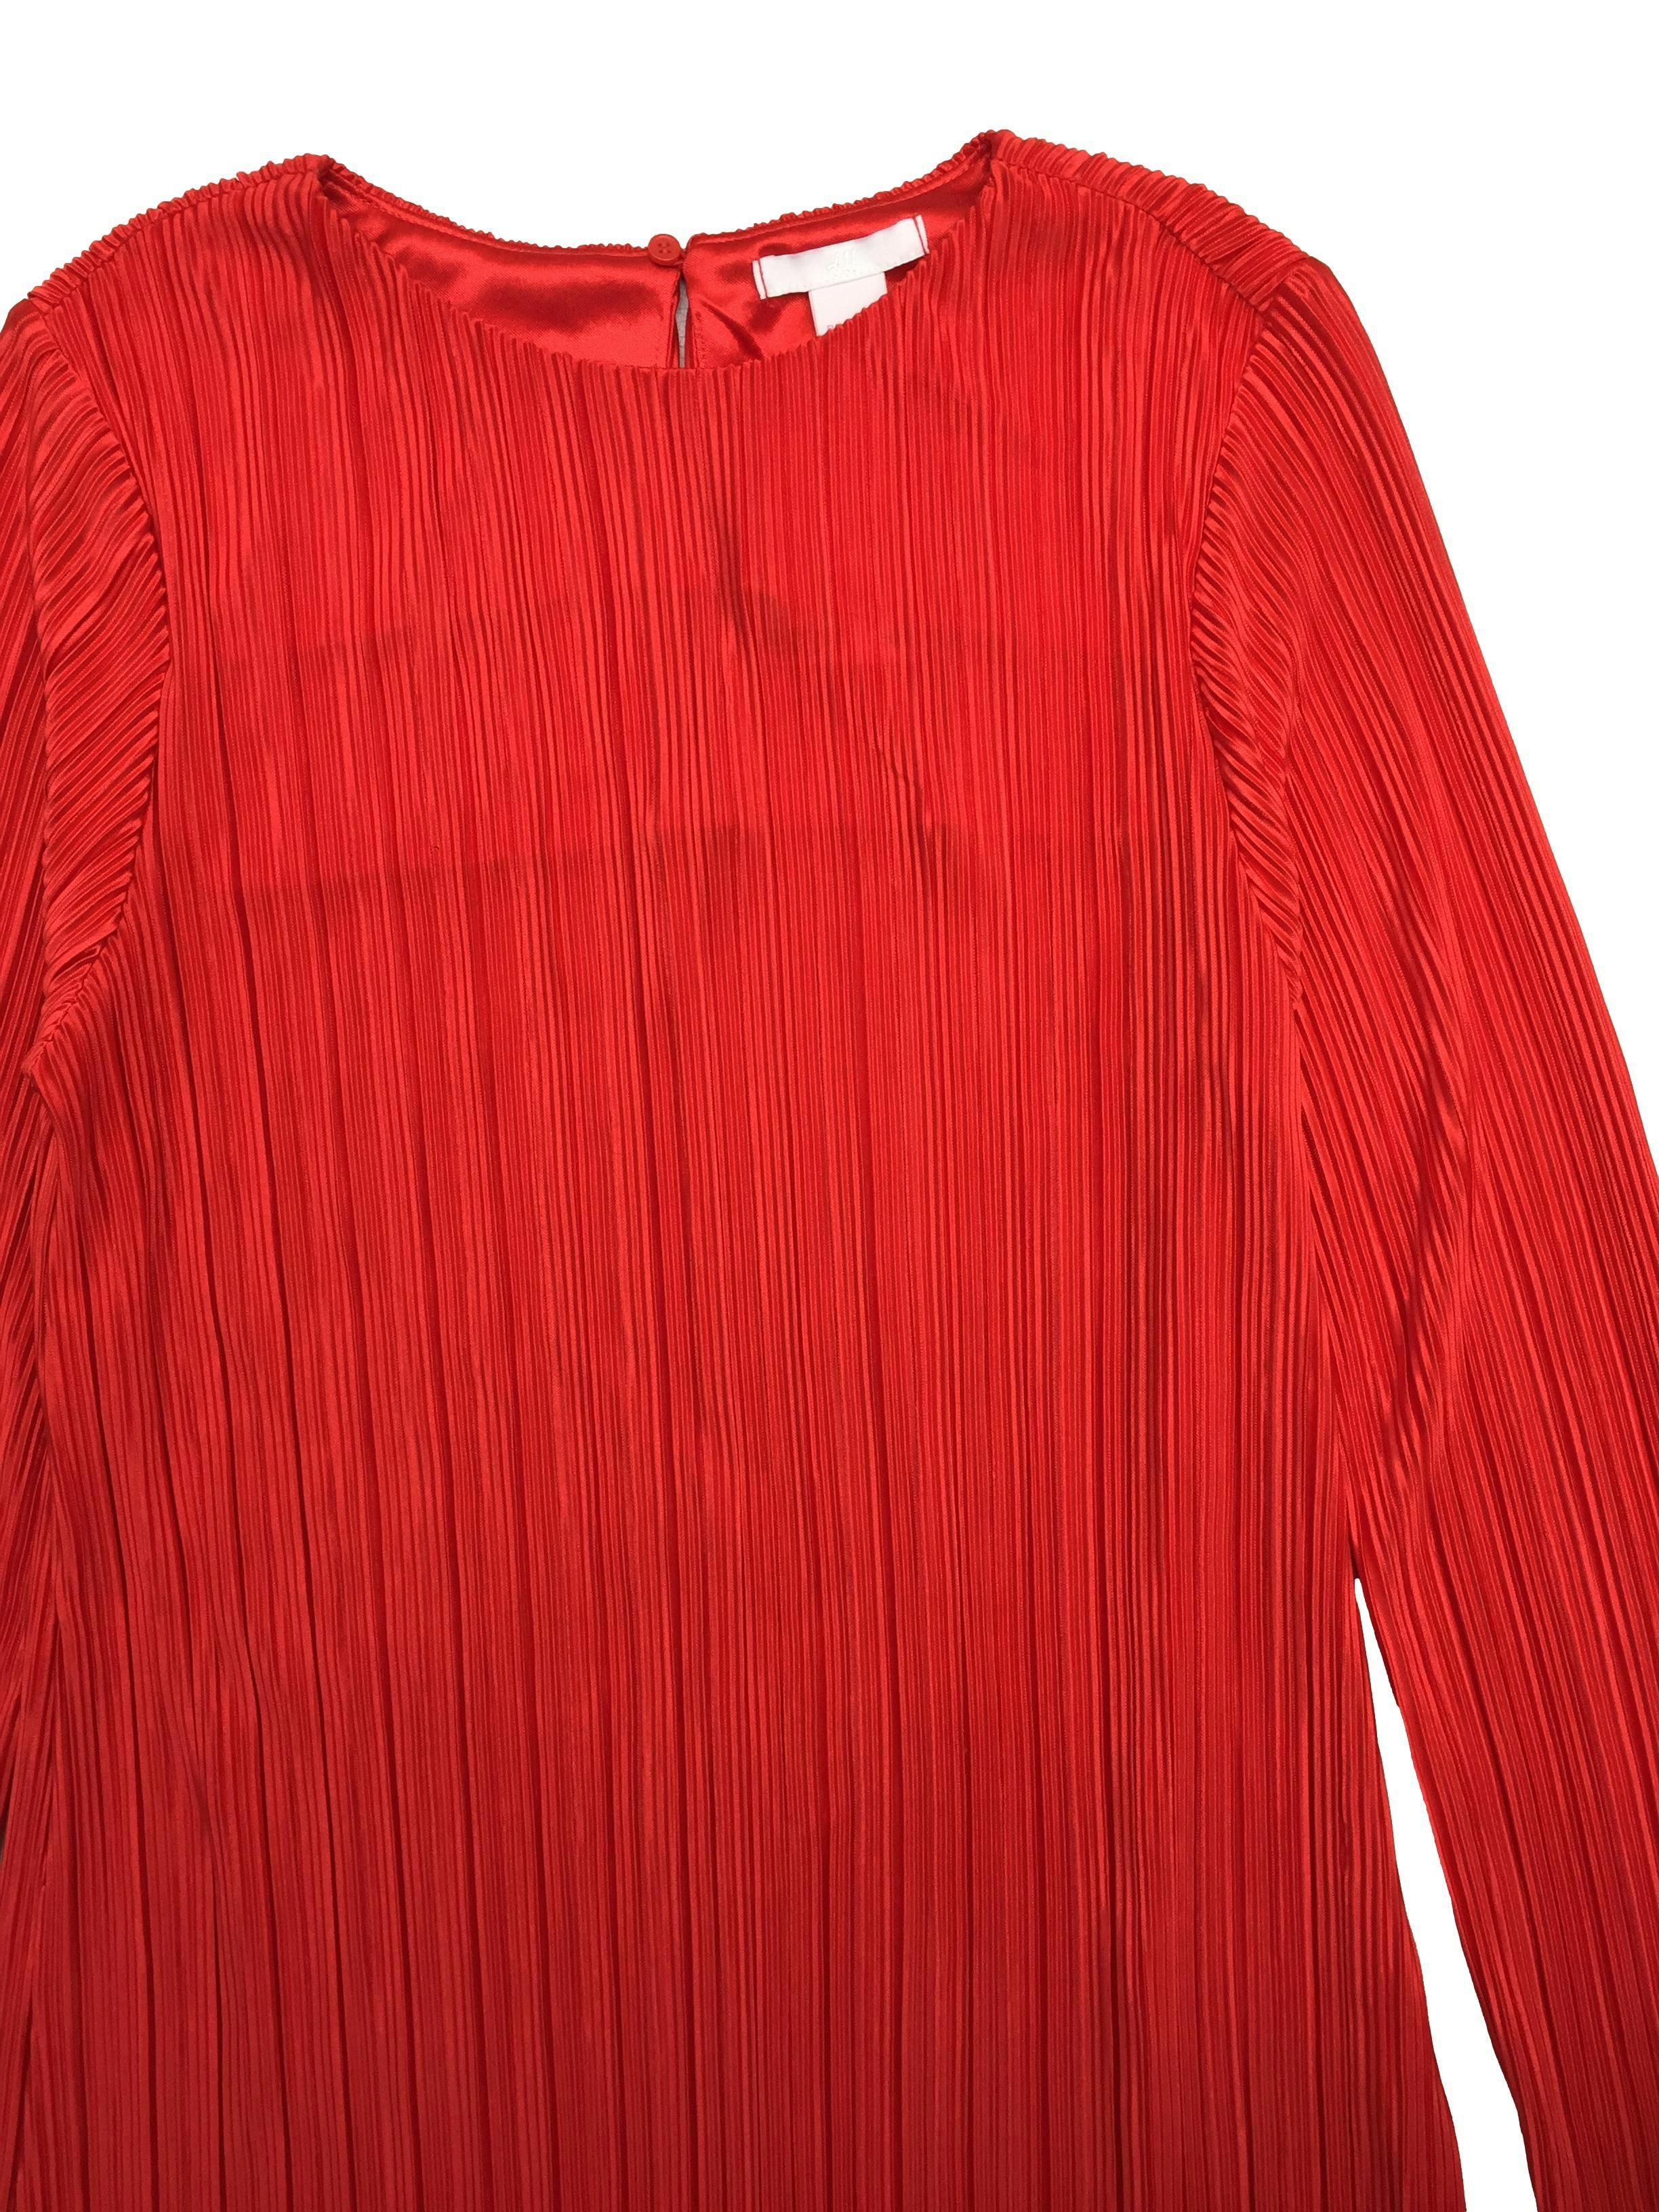 Vestido H&M rojo plisado manga larga. Busto 95cm Largo 88cm. Nuevo con etiqueta